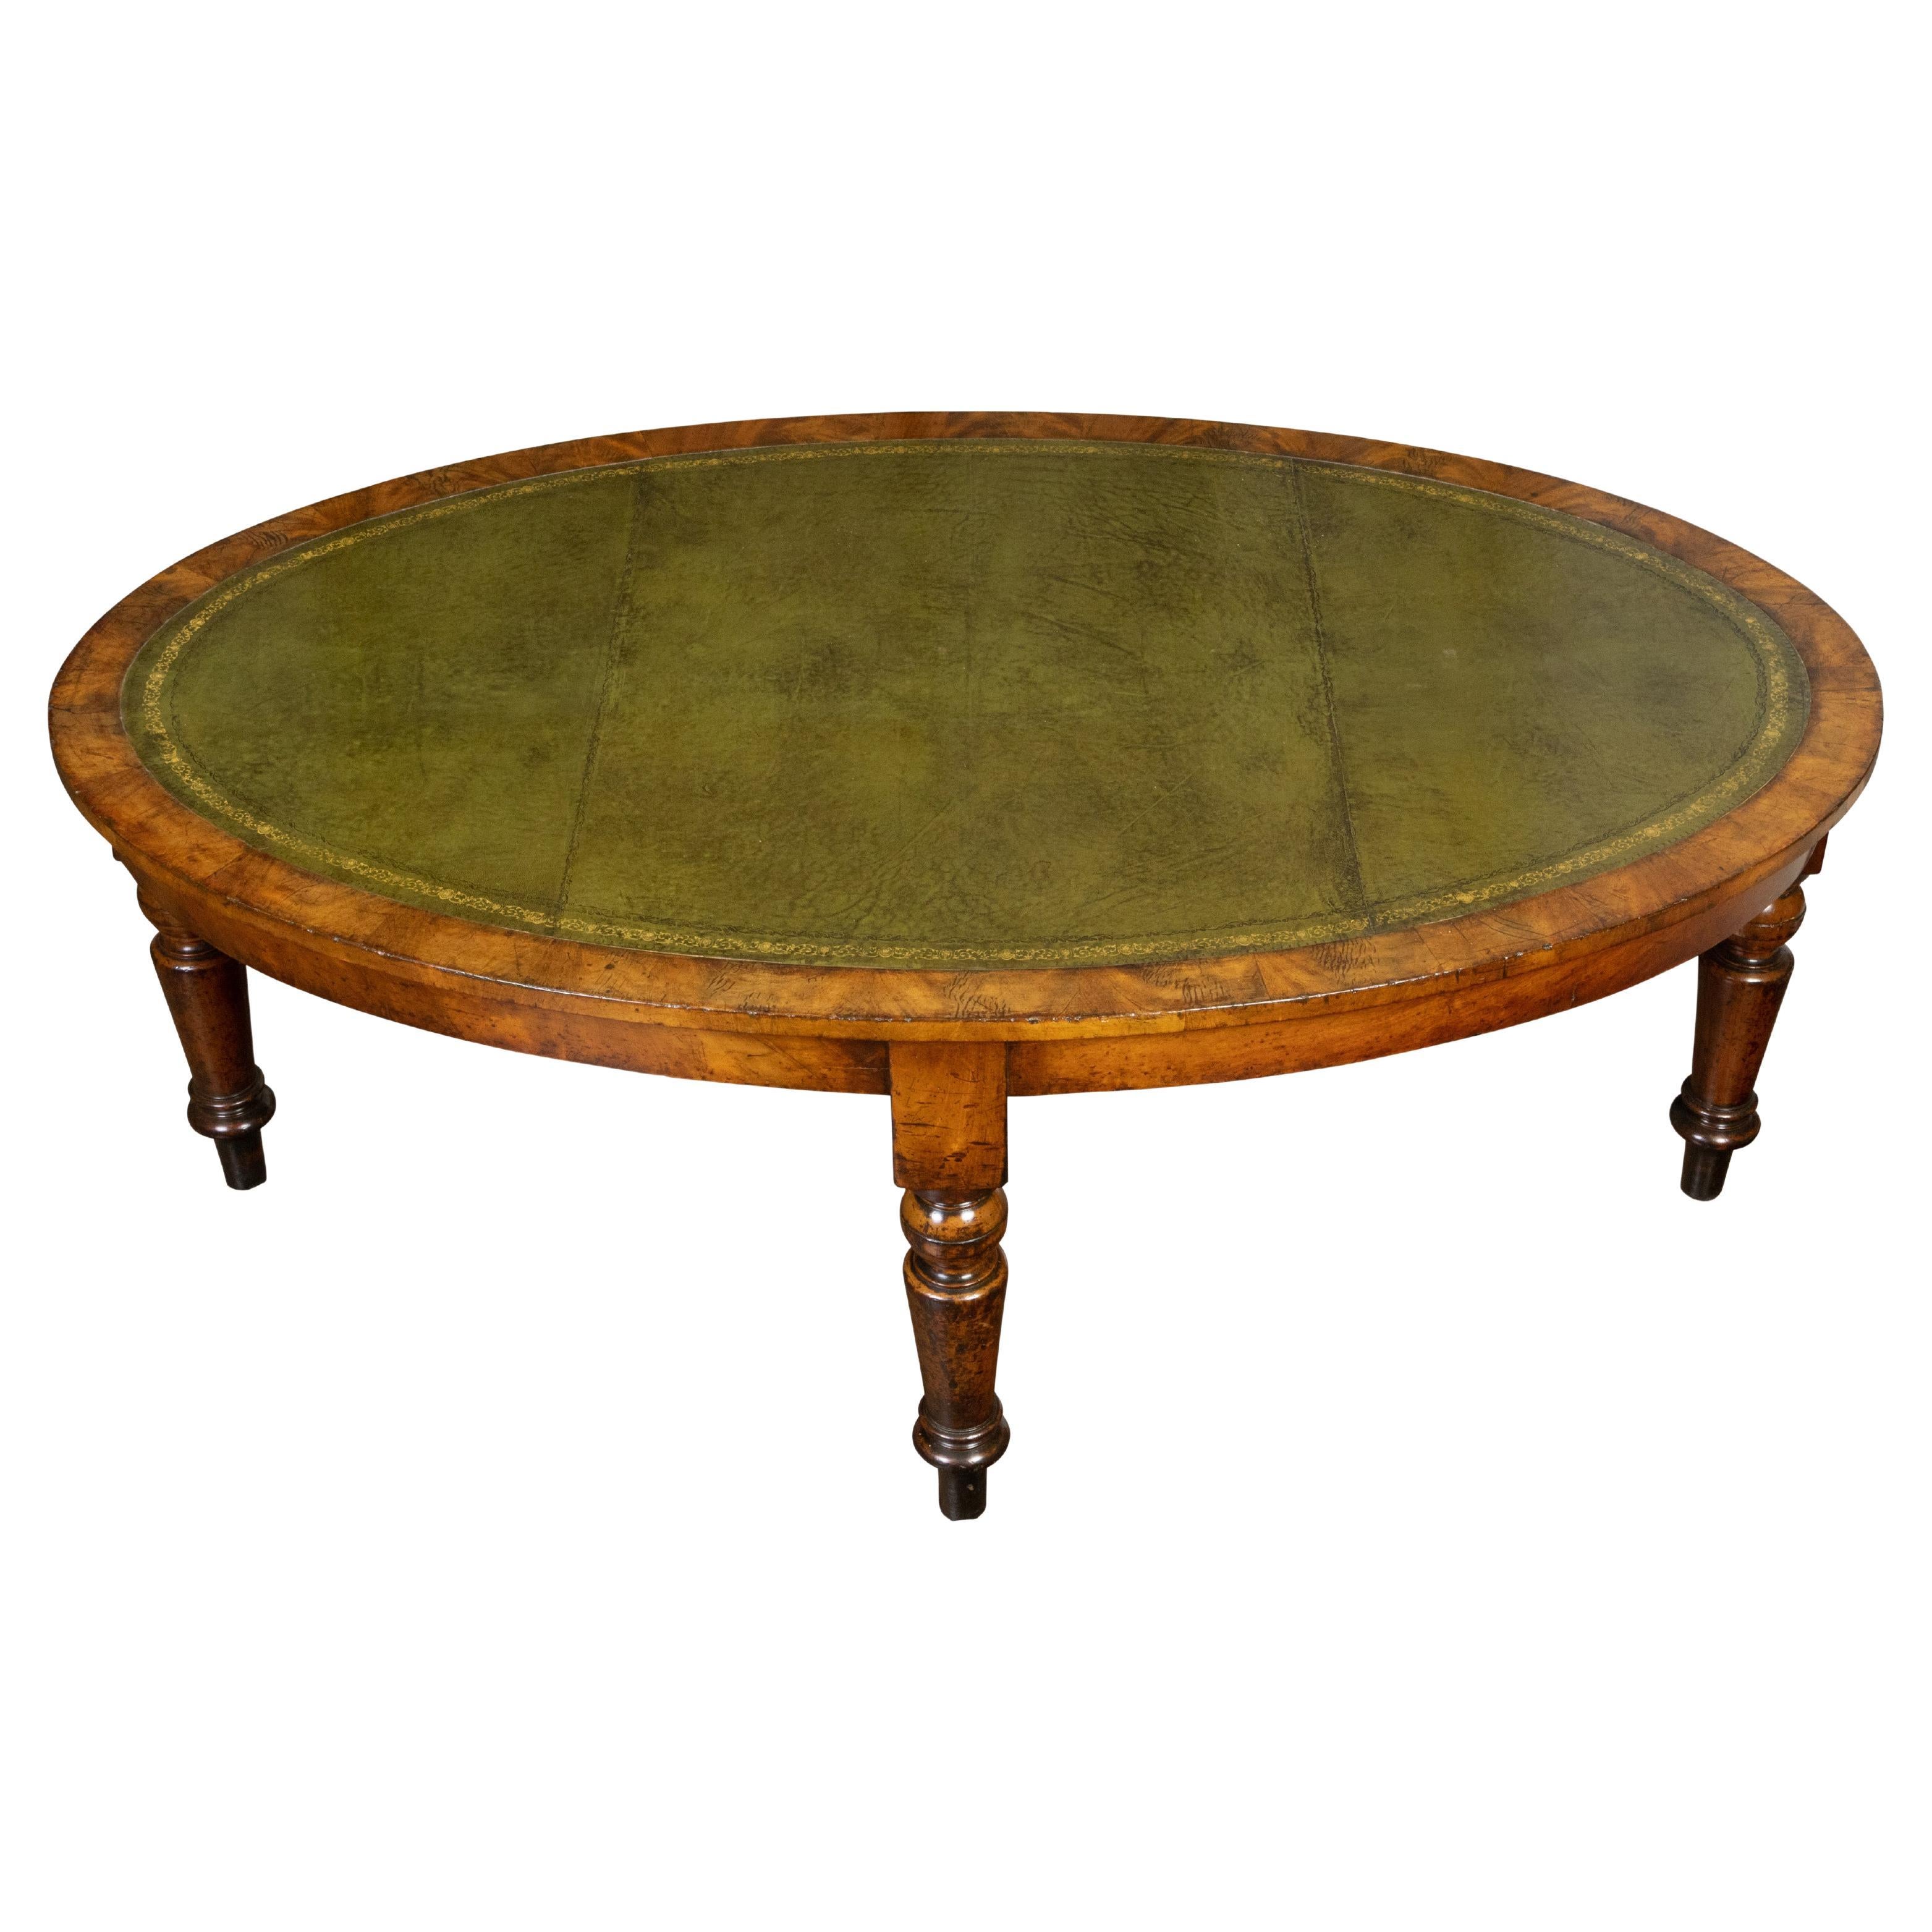 Englischer Mahagoni-Tisch aus dem 19. Jahrhundert mit ovaler Platte aus grünem Leder und gedrechselten Beinen